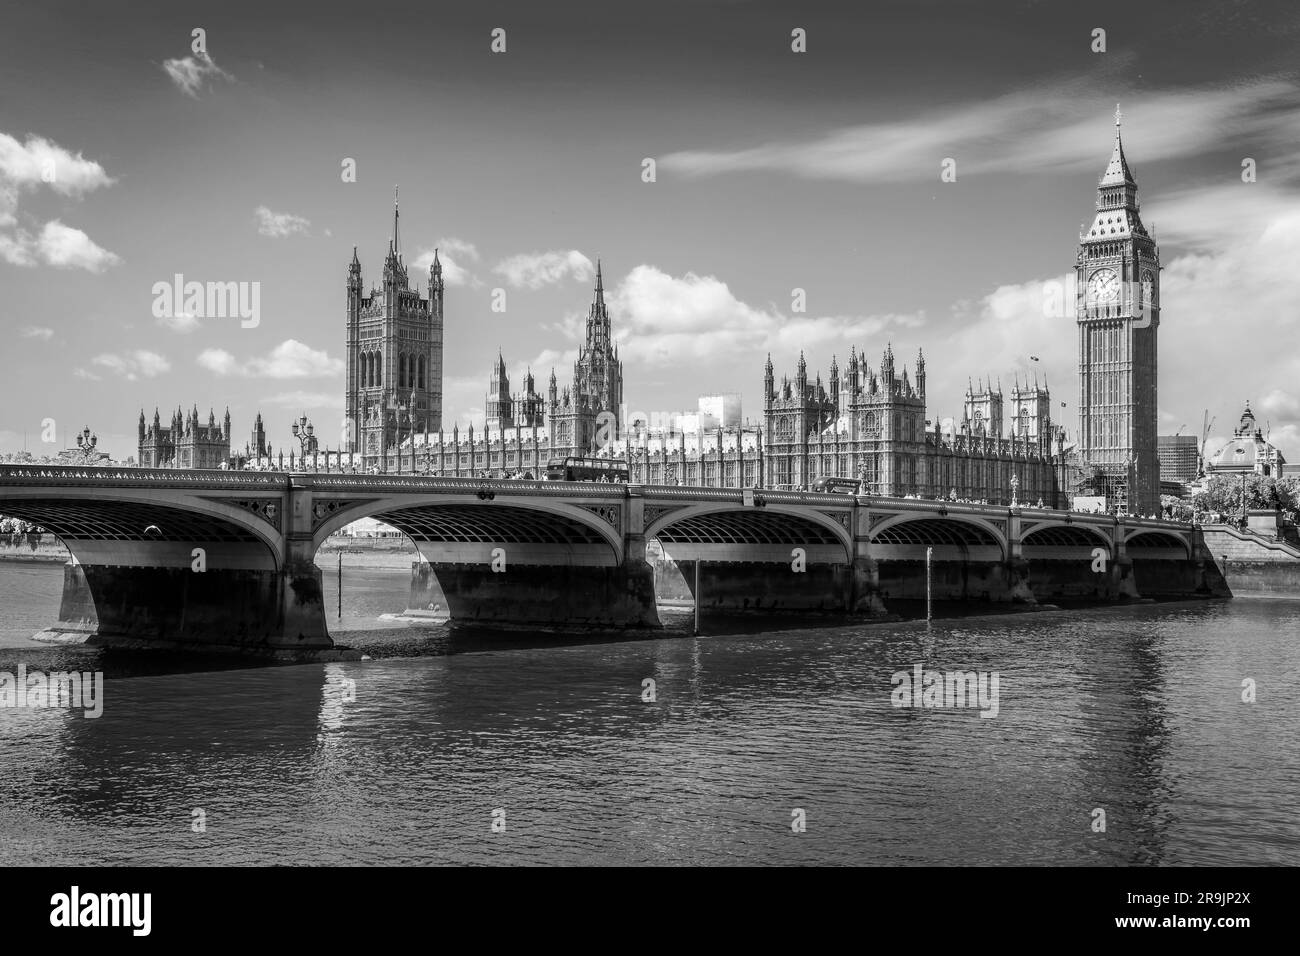 Westminster-Brücke über die Themse, Big Ben und die Parlamentsgebäude in London, Großbritannien. Schwarzweißfotografie. Stockfoto